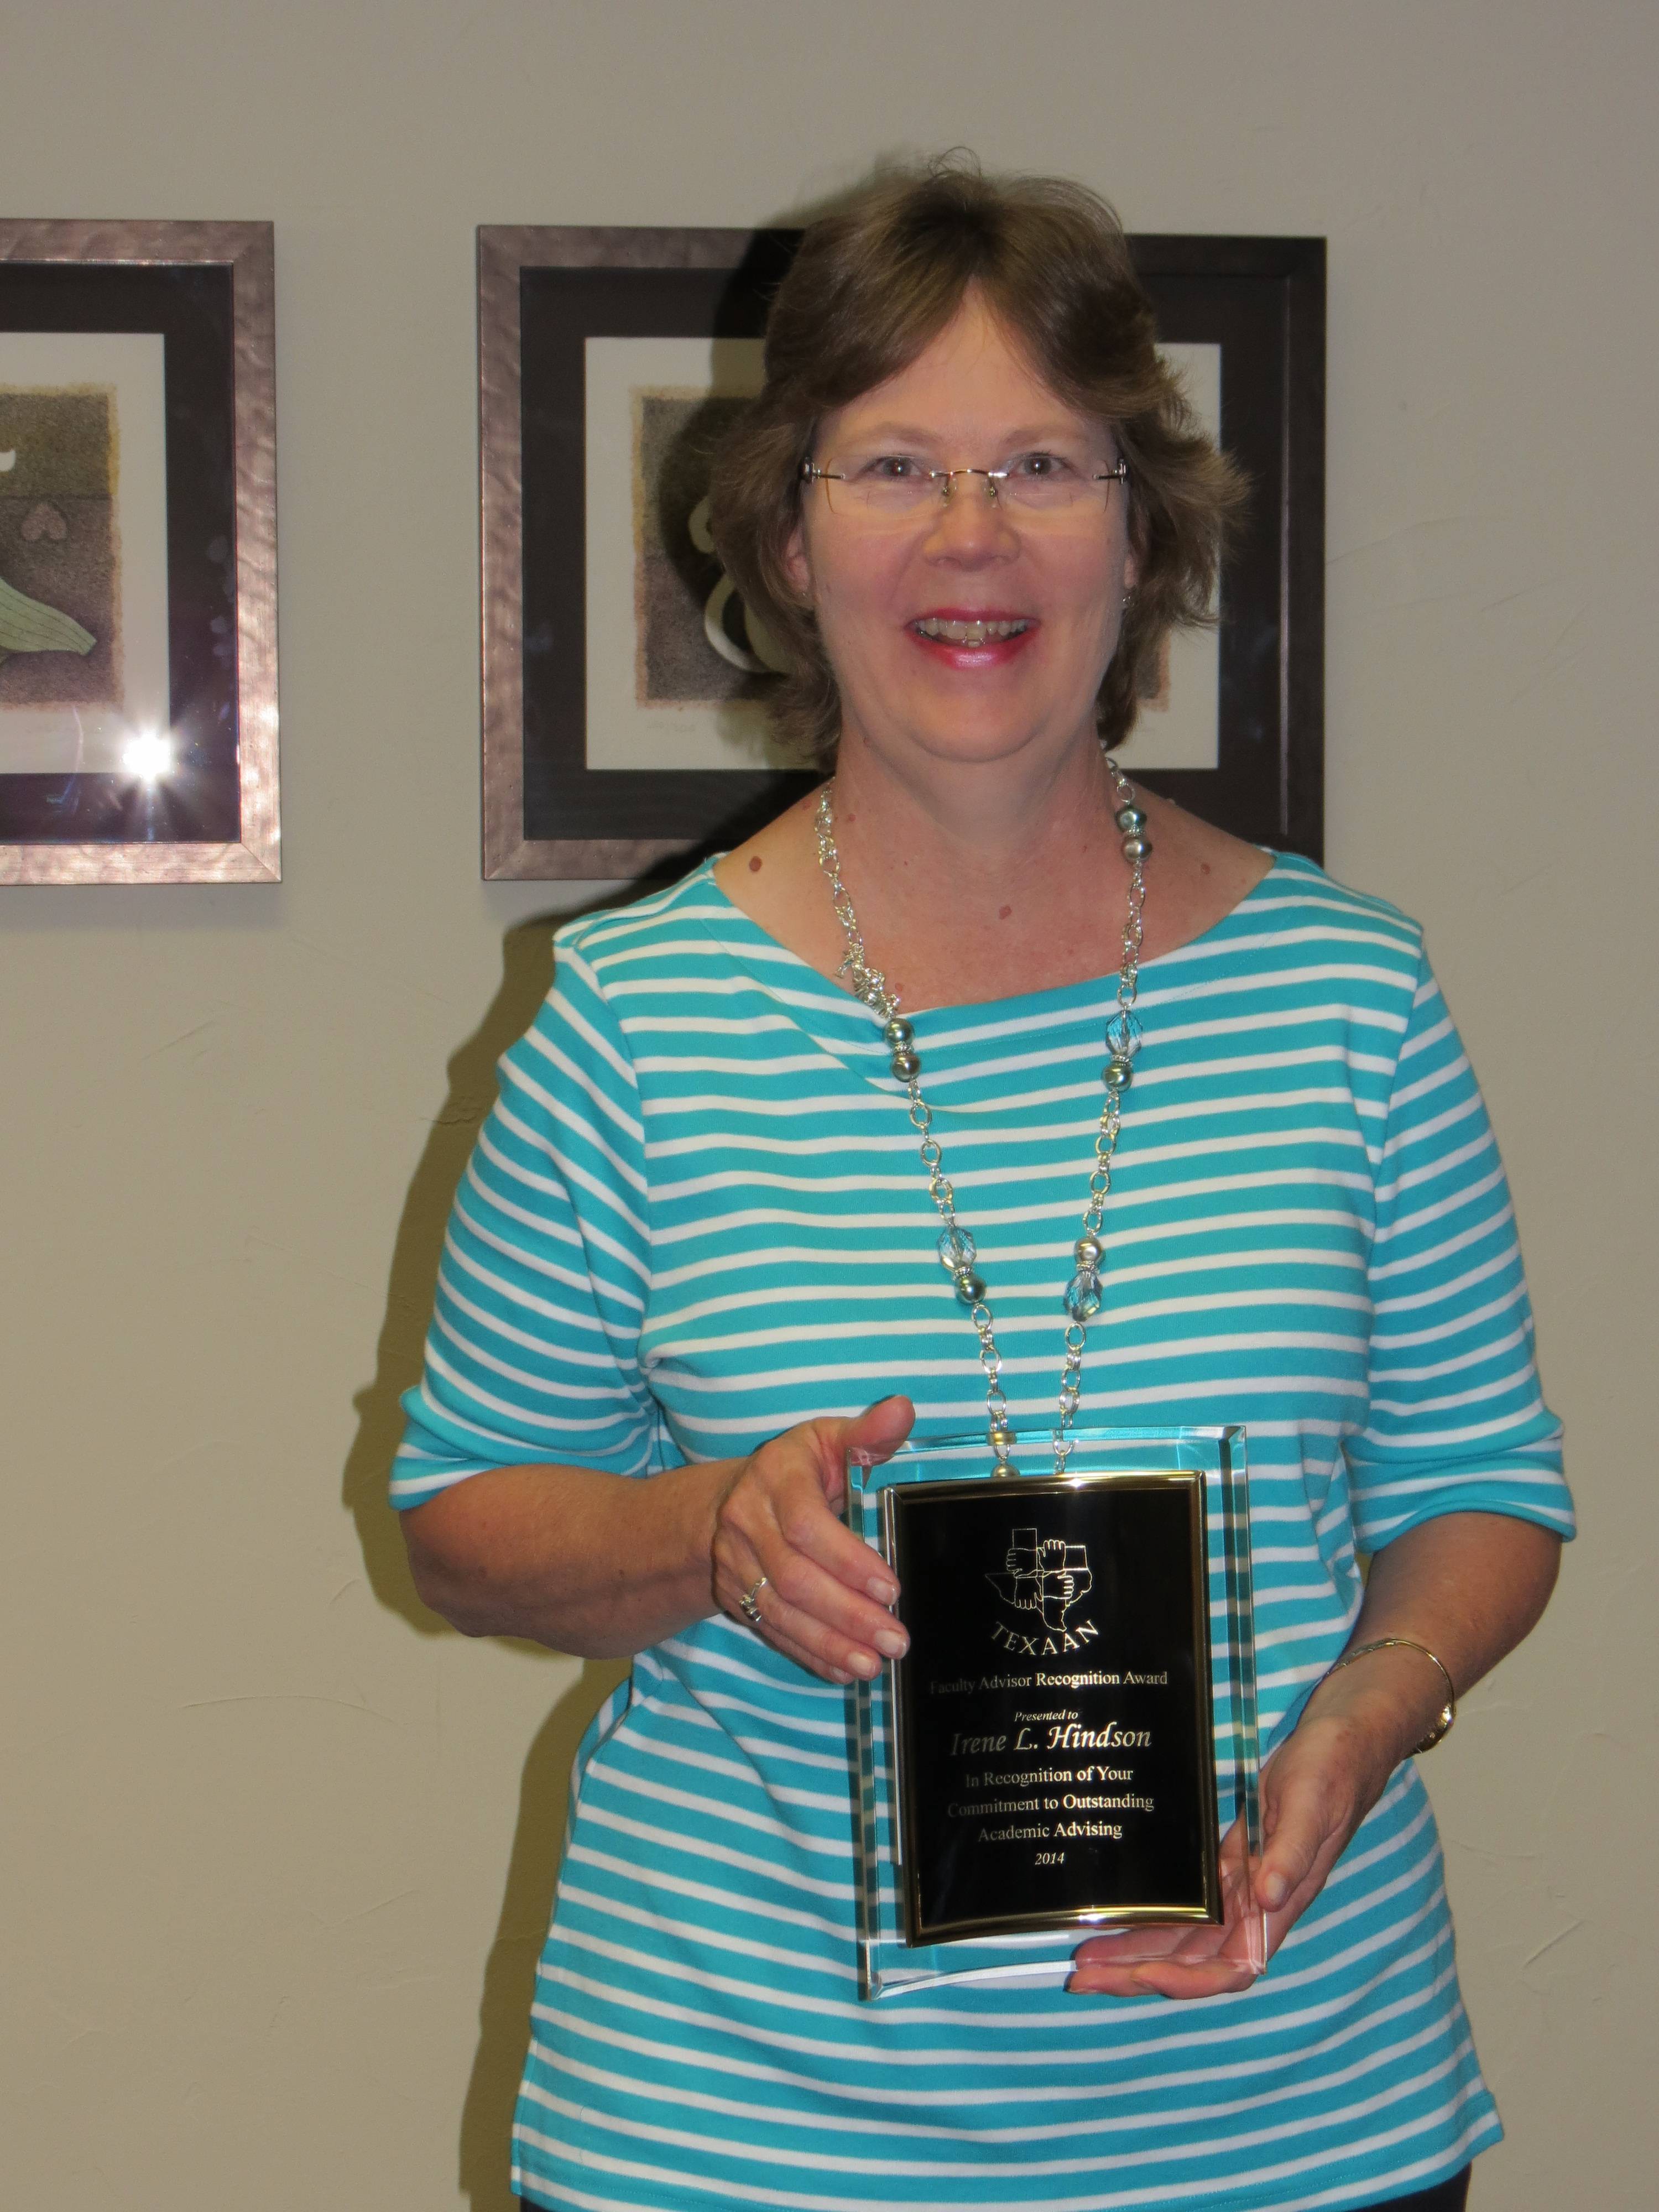 Irene Hindson Award